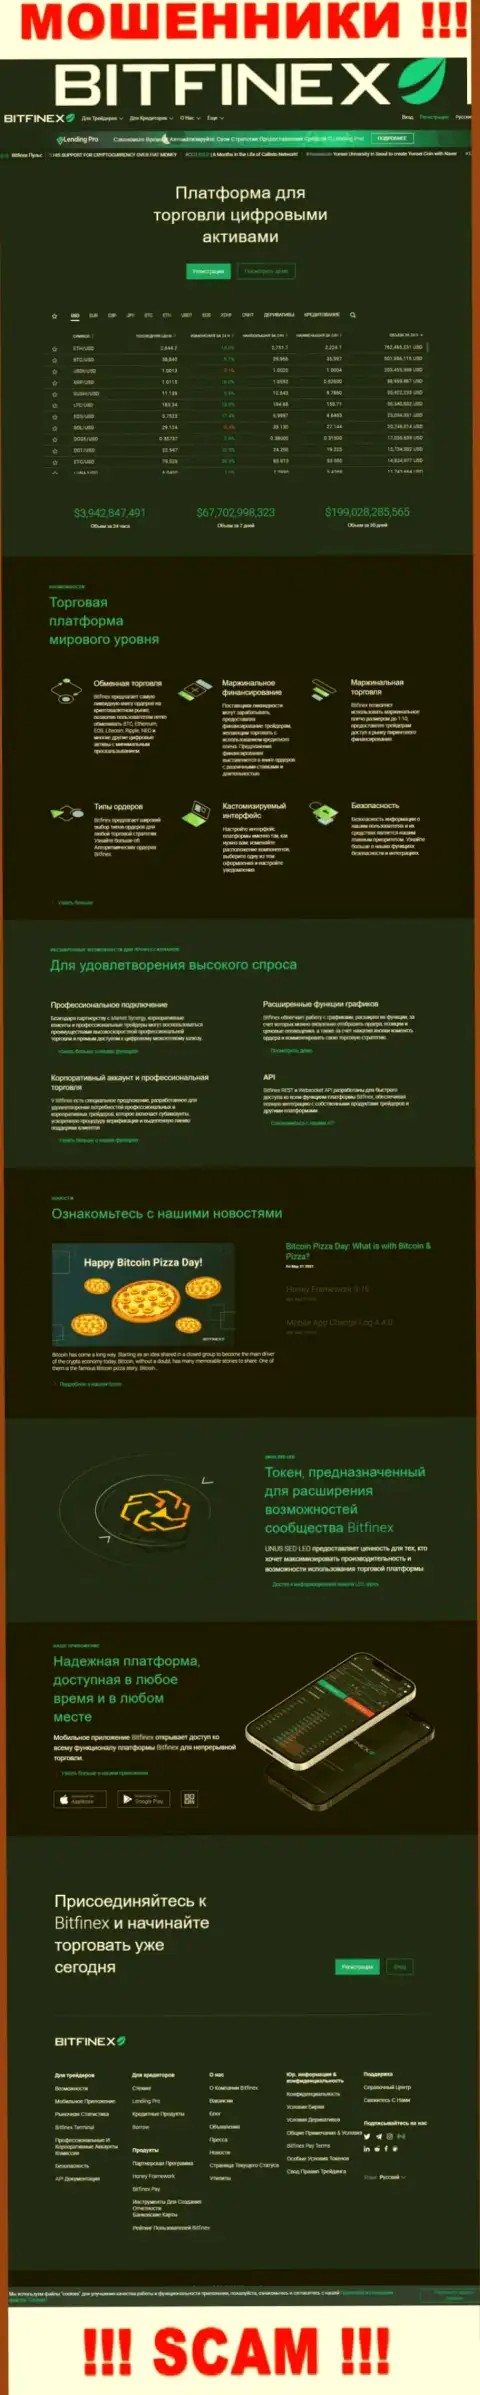 Фальшивая информация от махинаторов Bitfinex Com у них на официальном интернет-ресурсе Bitfinex Com